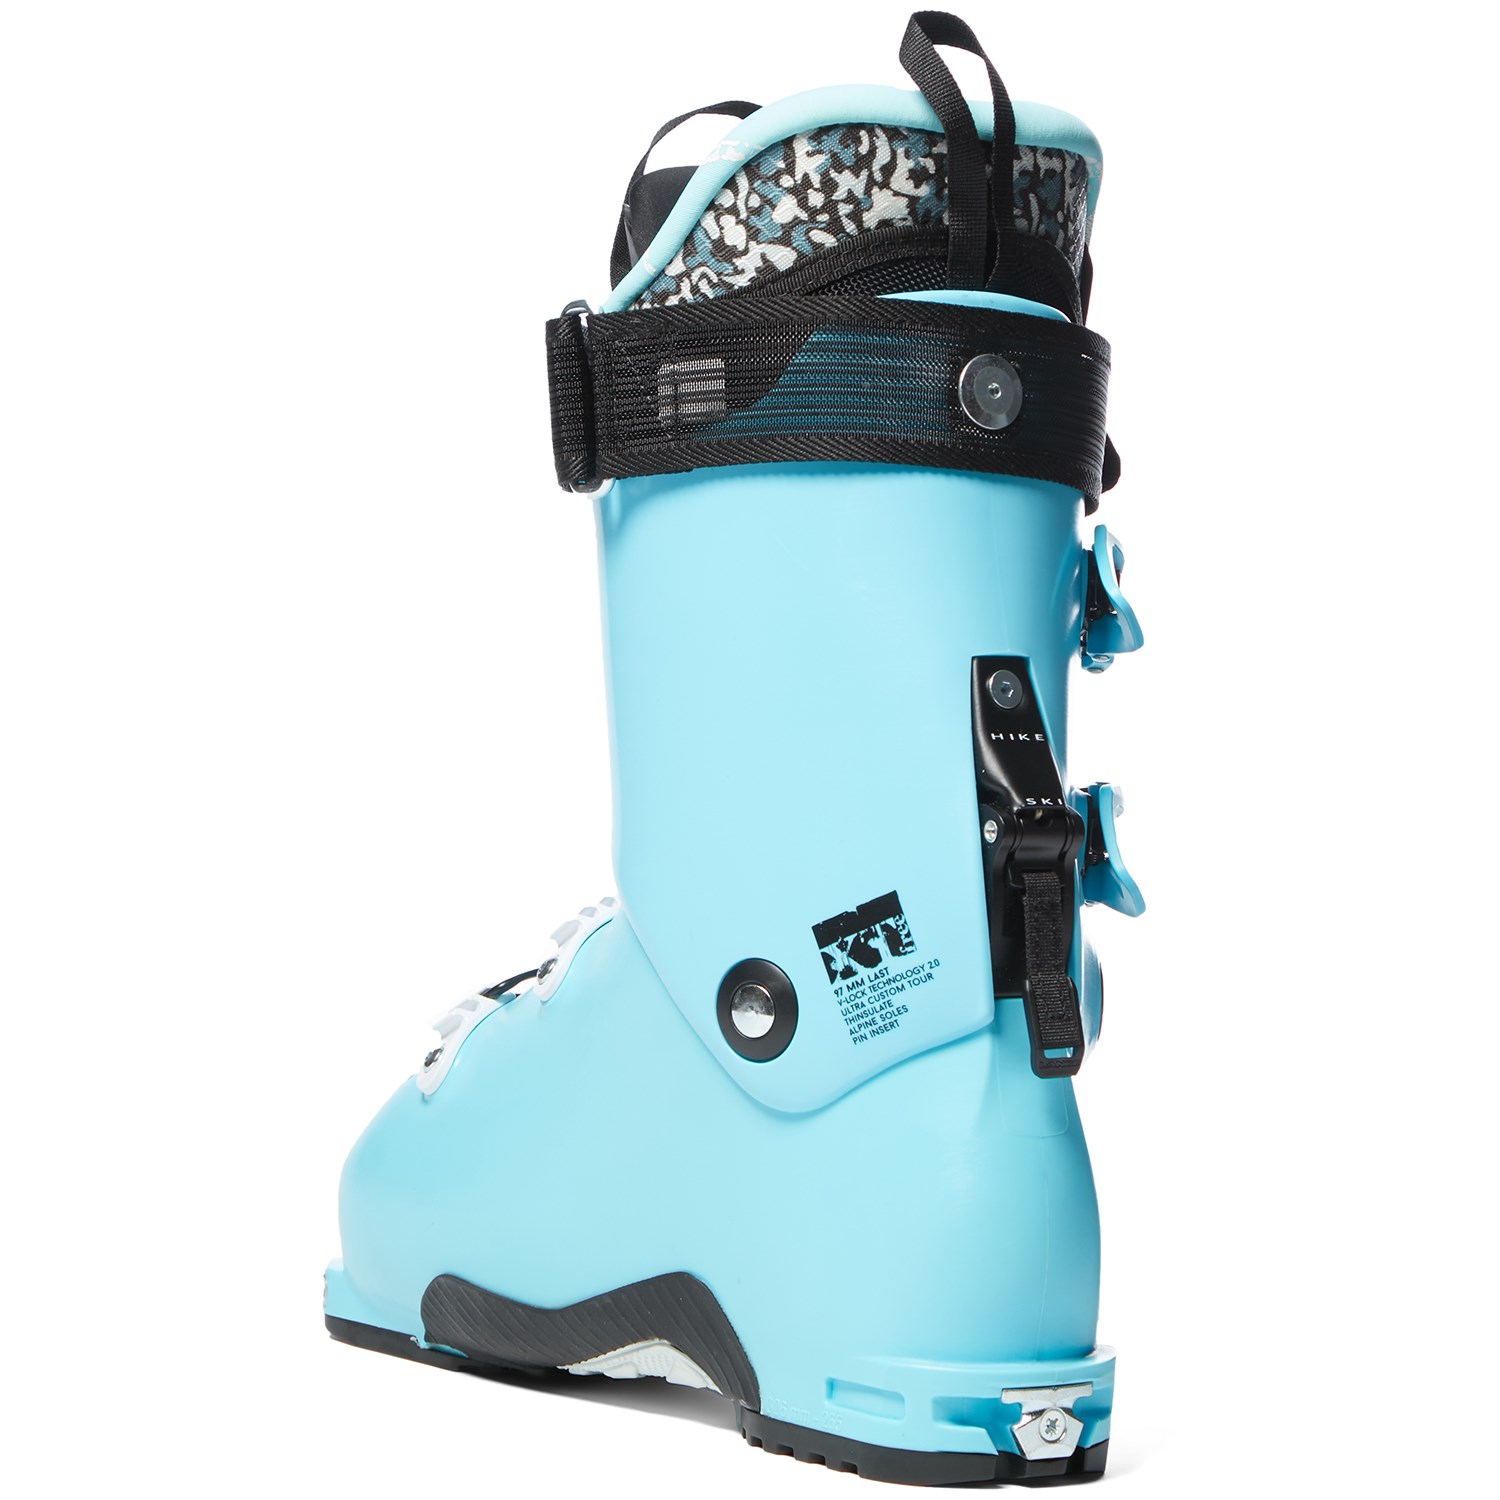 Lange XT 110 LV W Women's Ski Boots 2015 — Vermont Ski and Sport